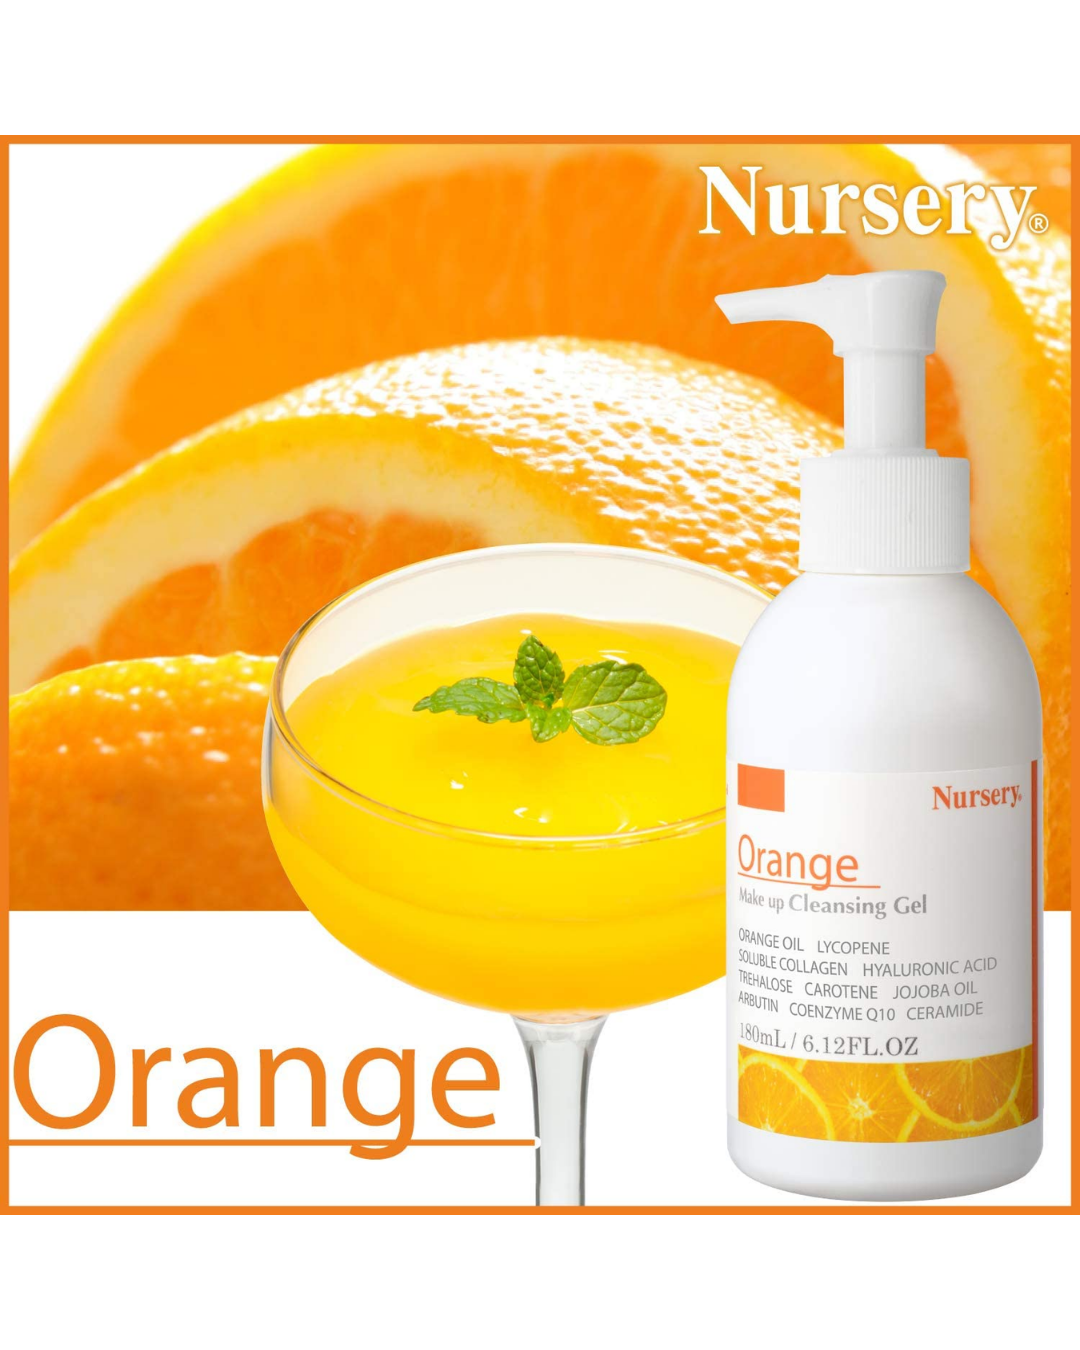 Nursery Makeup Cleansing Gel Orange